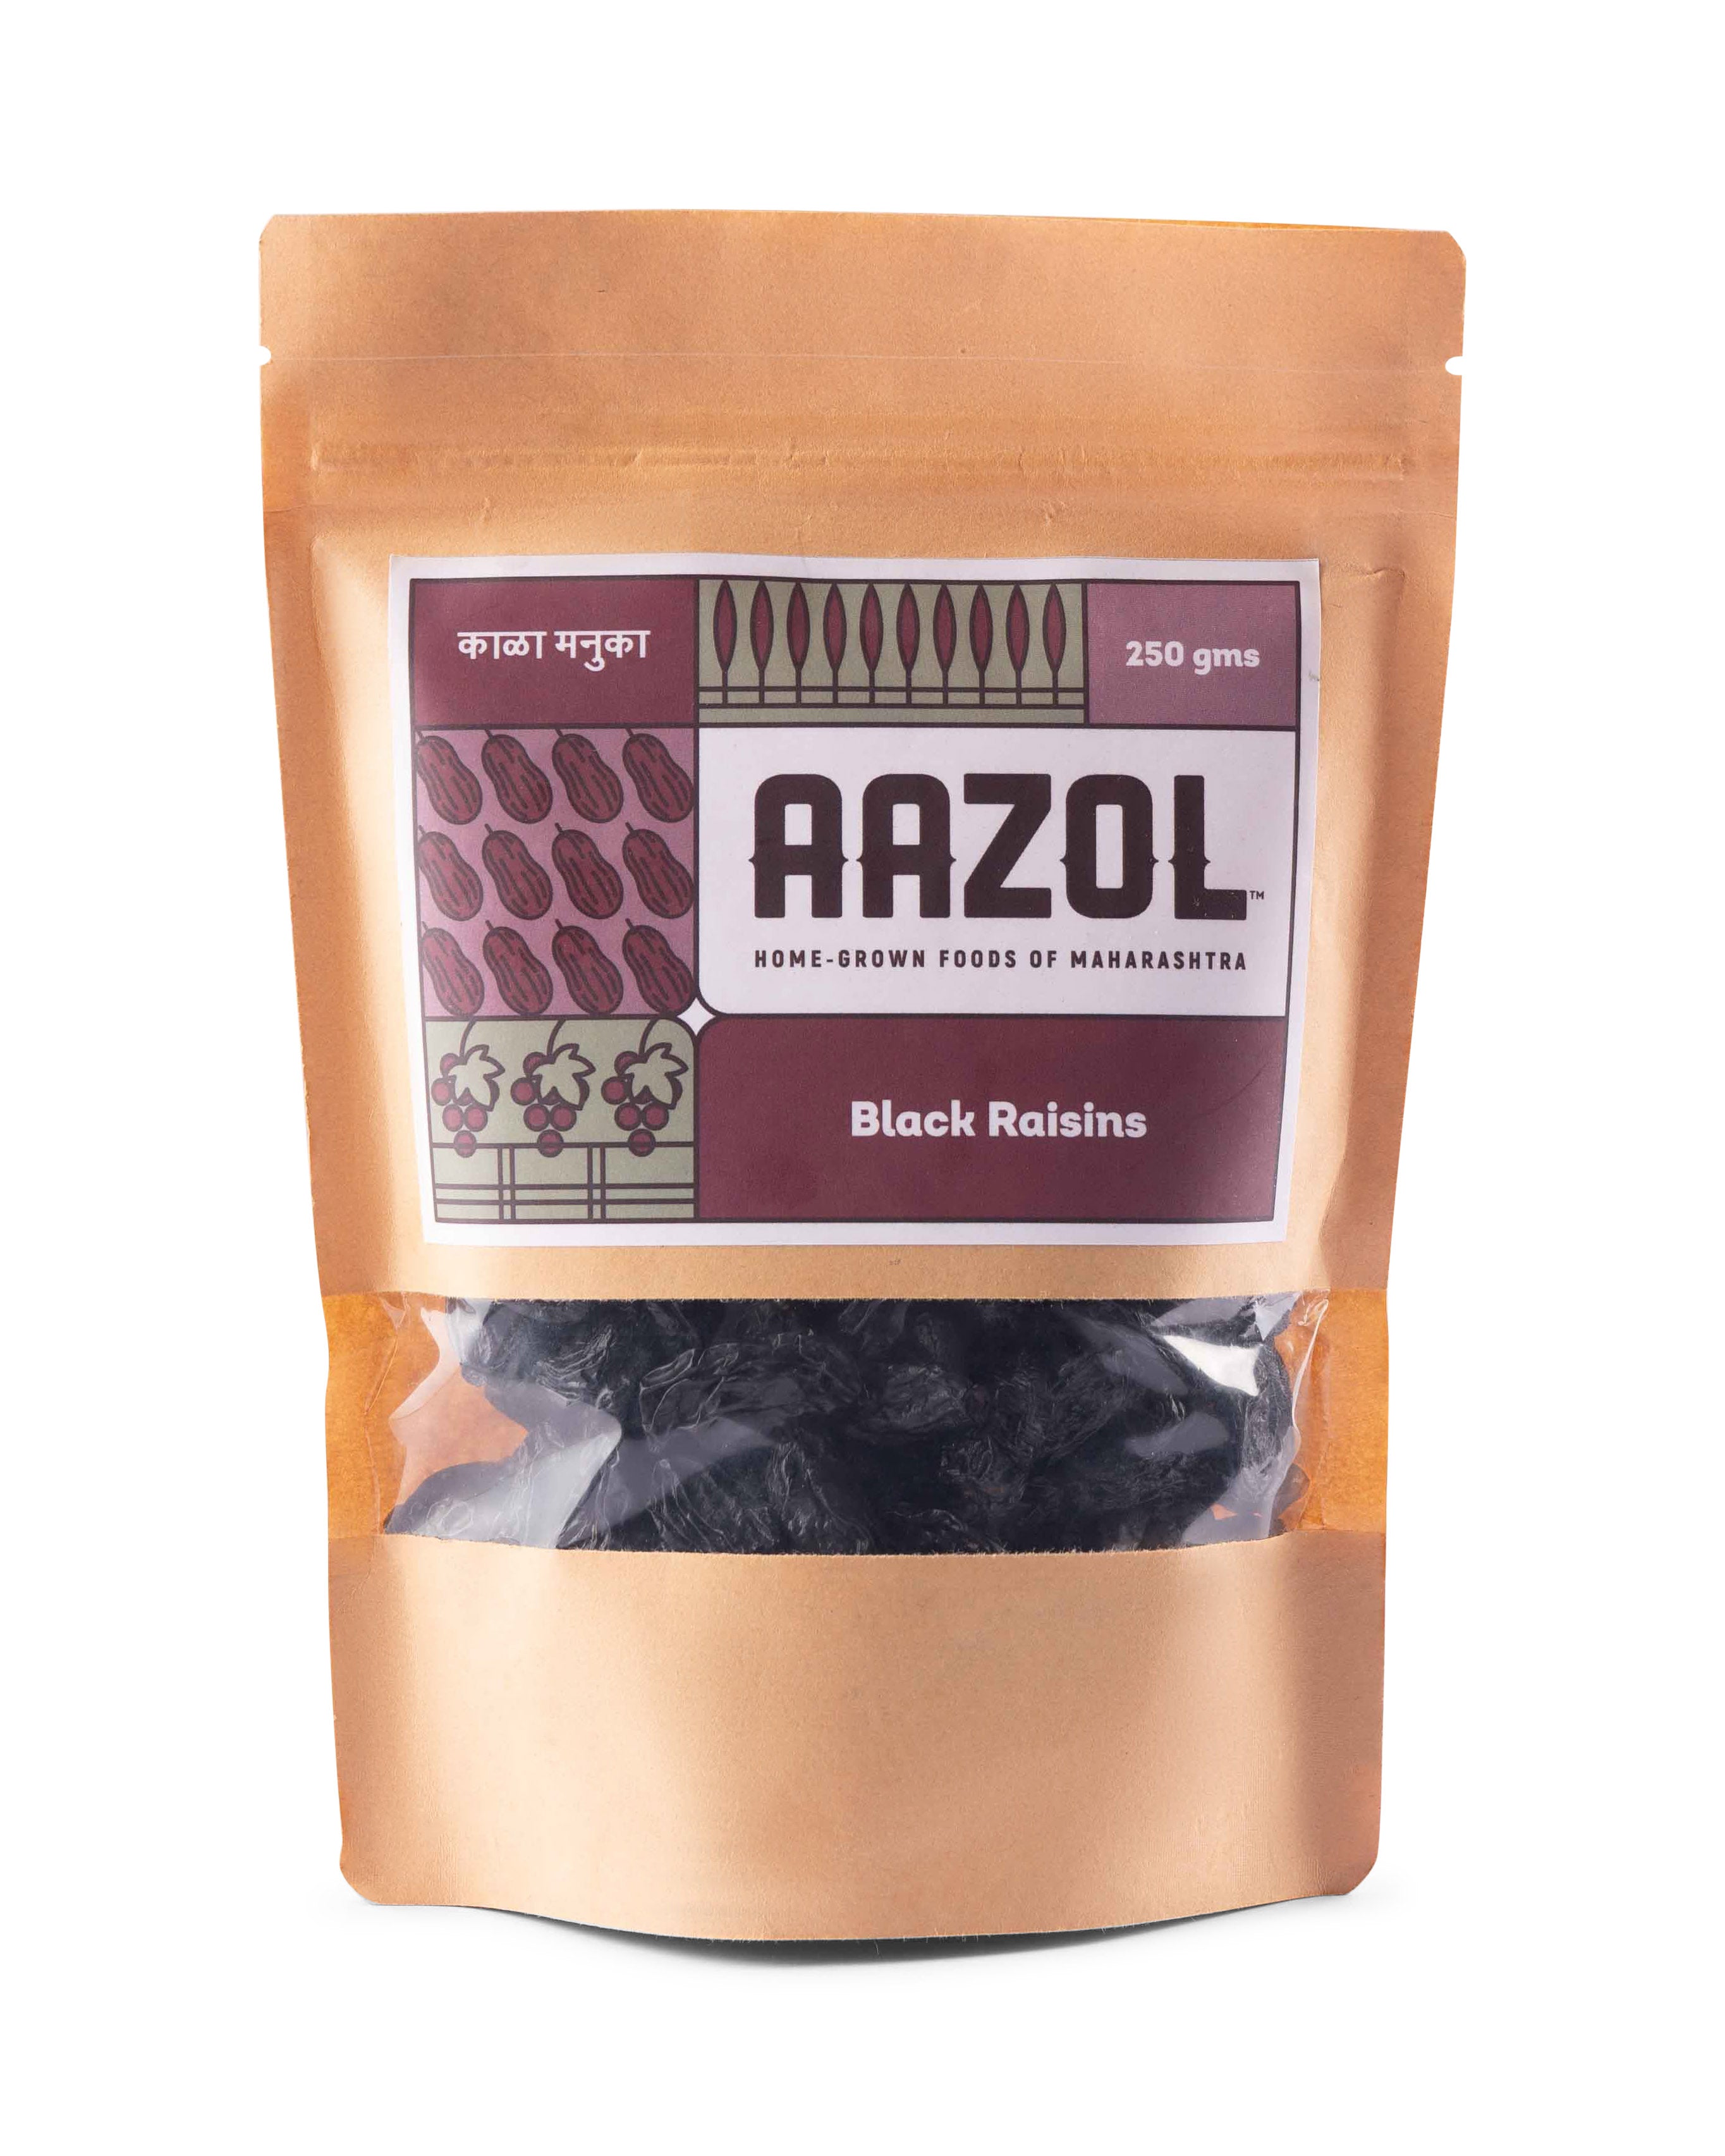 Aazol Jumbo Black Raisins: Nashik's Famed Seedless Kismis 250g